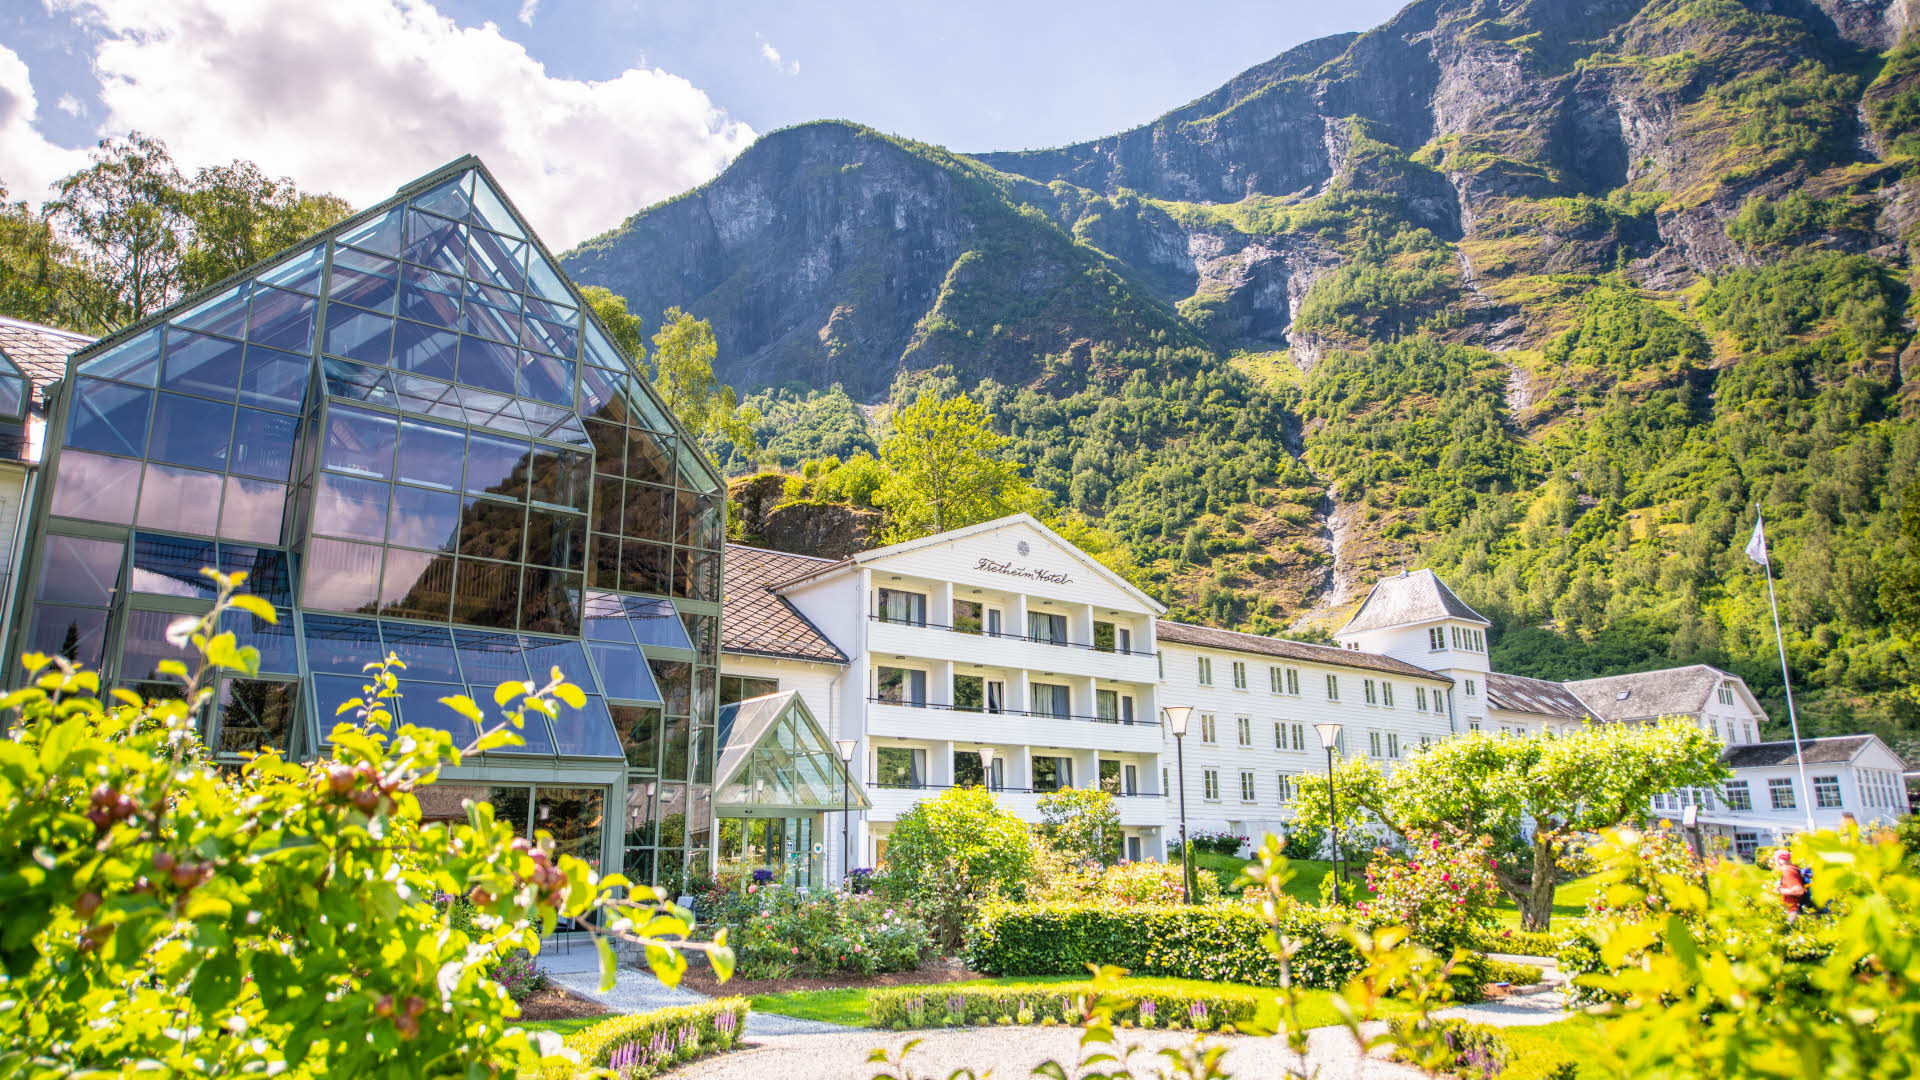 Le Fretheim Hotel vu du jardin en été, avec un ciel bleu et des buissons de roses dans le fond